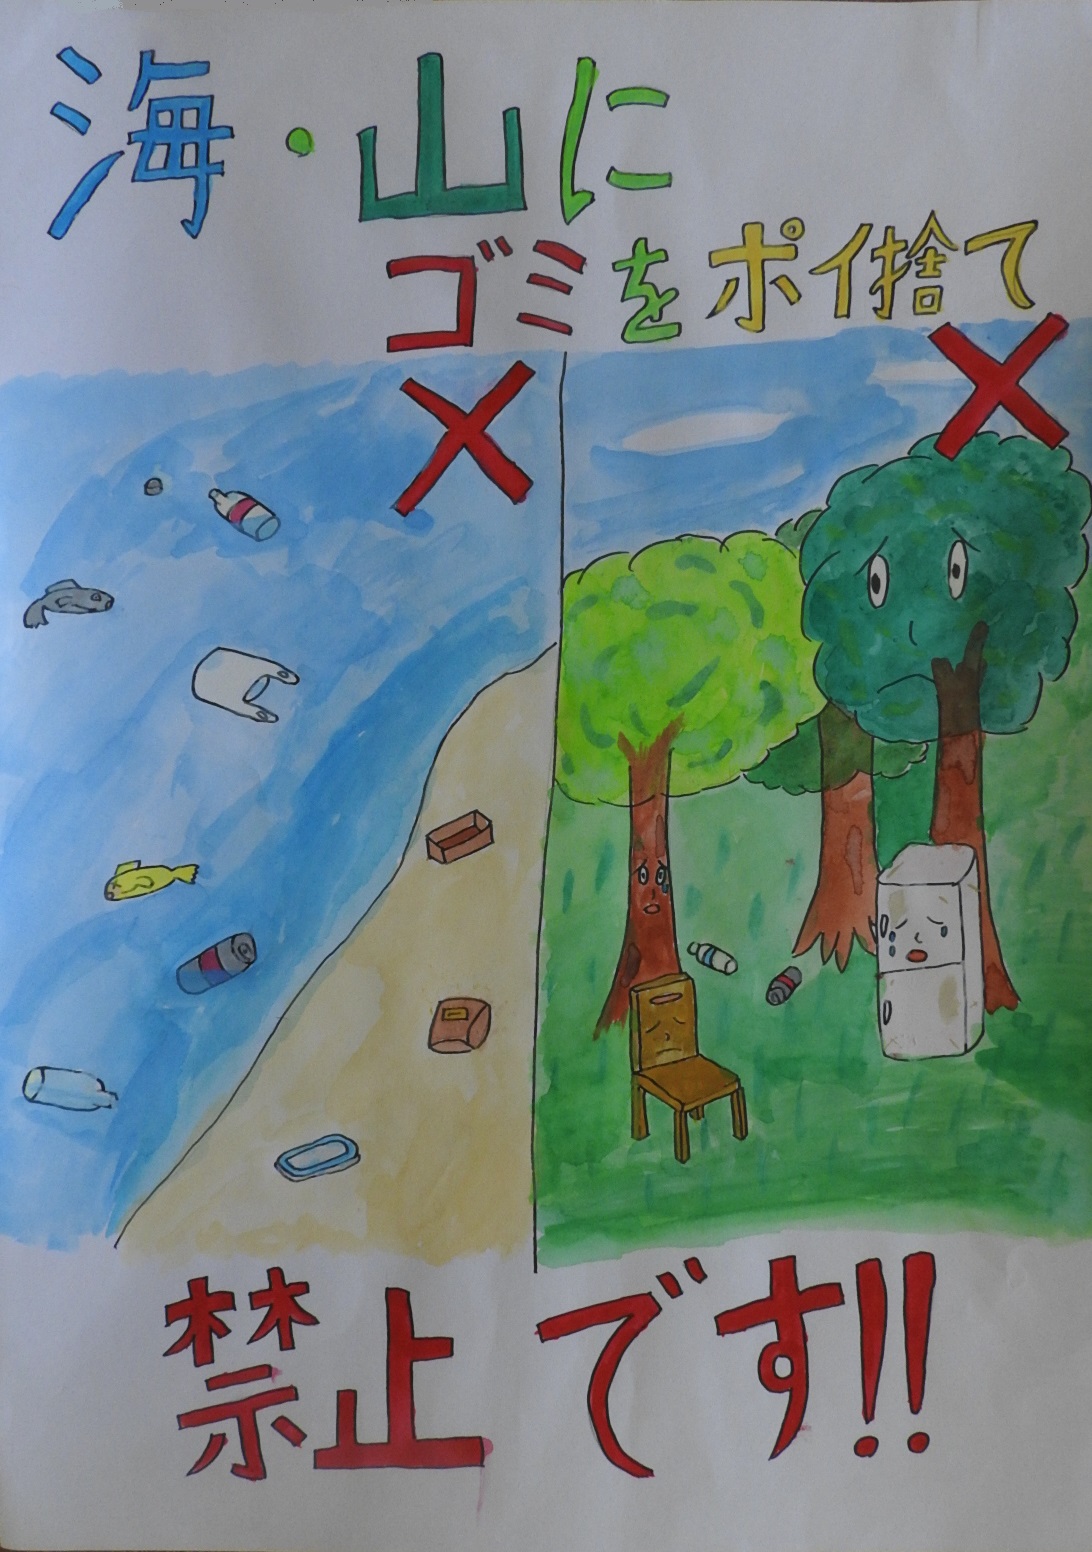 左にバツ印の付いたゴミだらけの海岸、右にバツ印の付いた粗大ごみの置かれた森の絵に「海・山にゴミをポイ捨て禁止です！！」と書かれたポスター